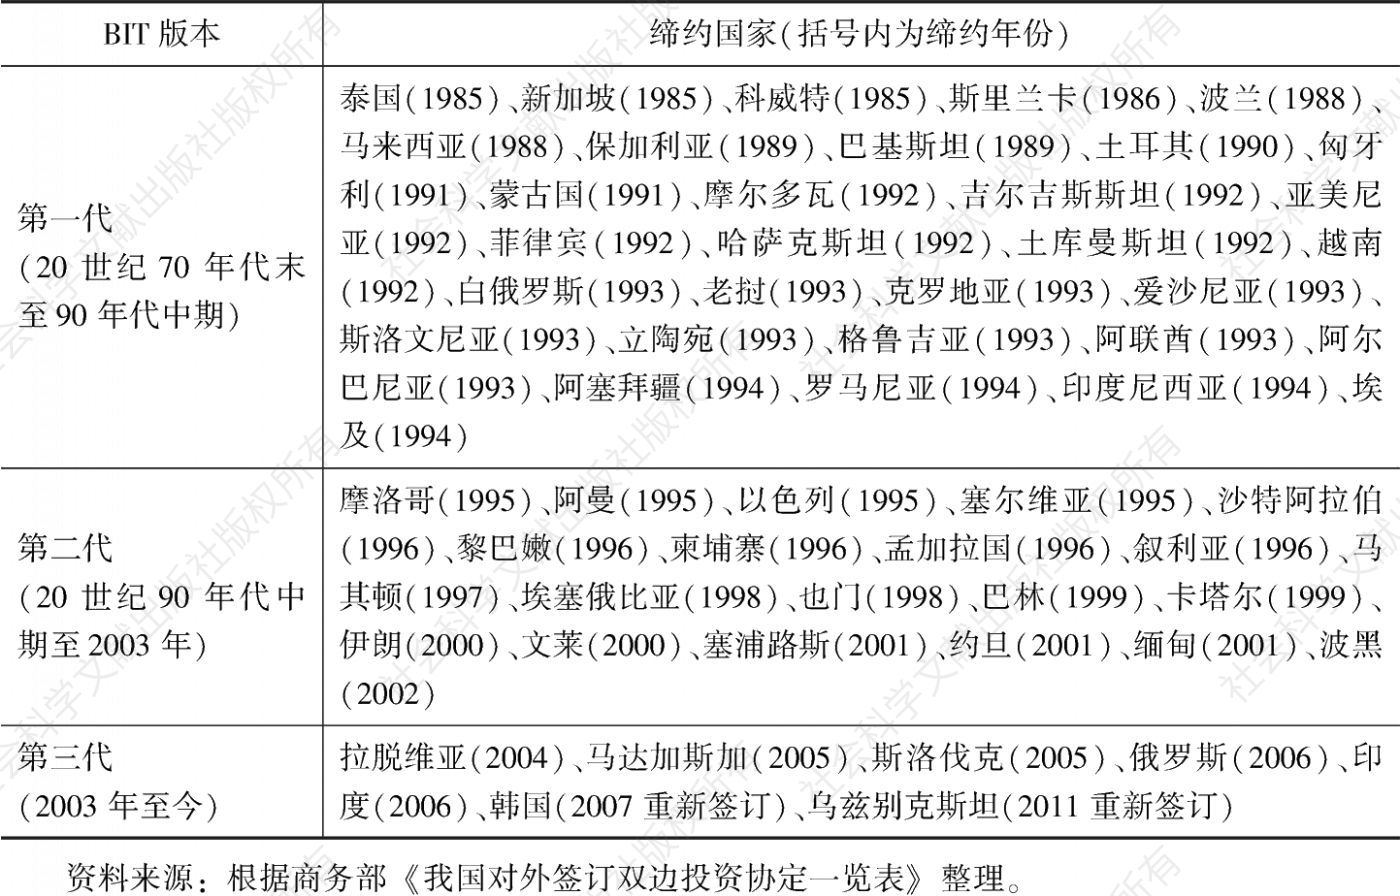 表1 中国与“一带一路”共建国家BIT签订情况